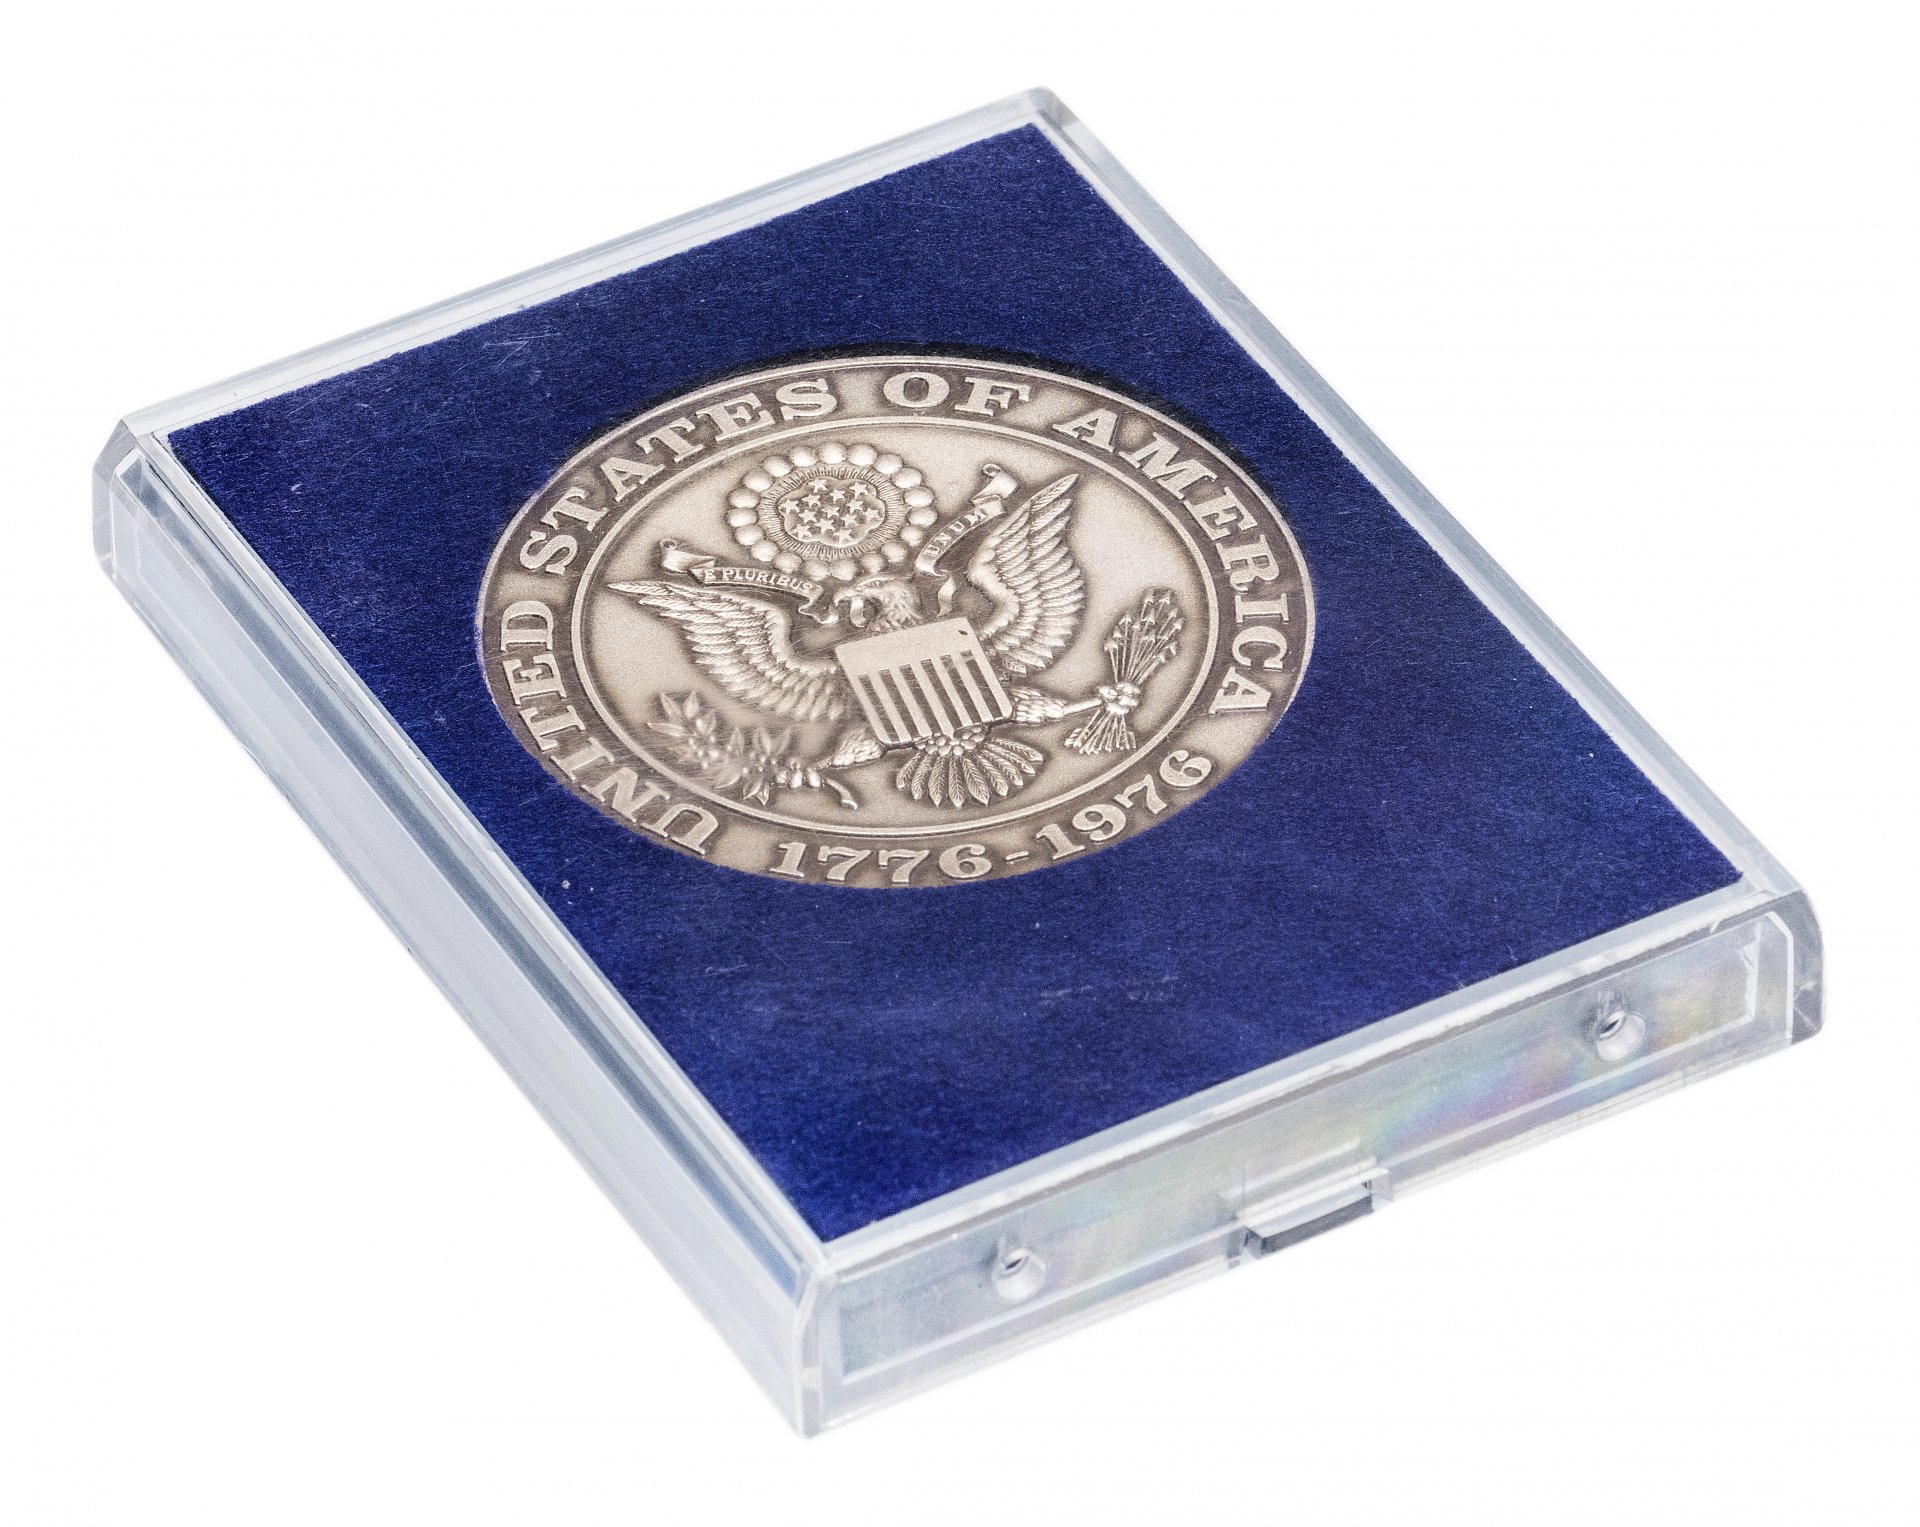 Конституционная конвенция. Медаль Америки. Серебряная медаль 1976 Grunberg. Медали США книга.